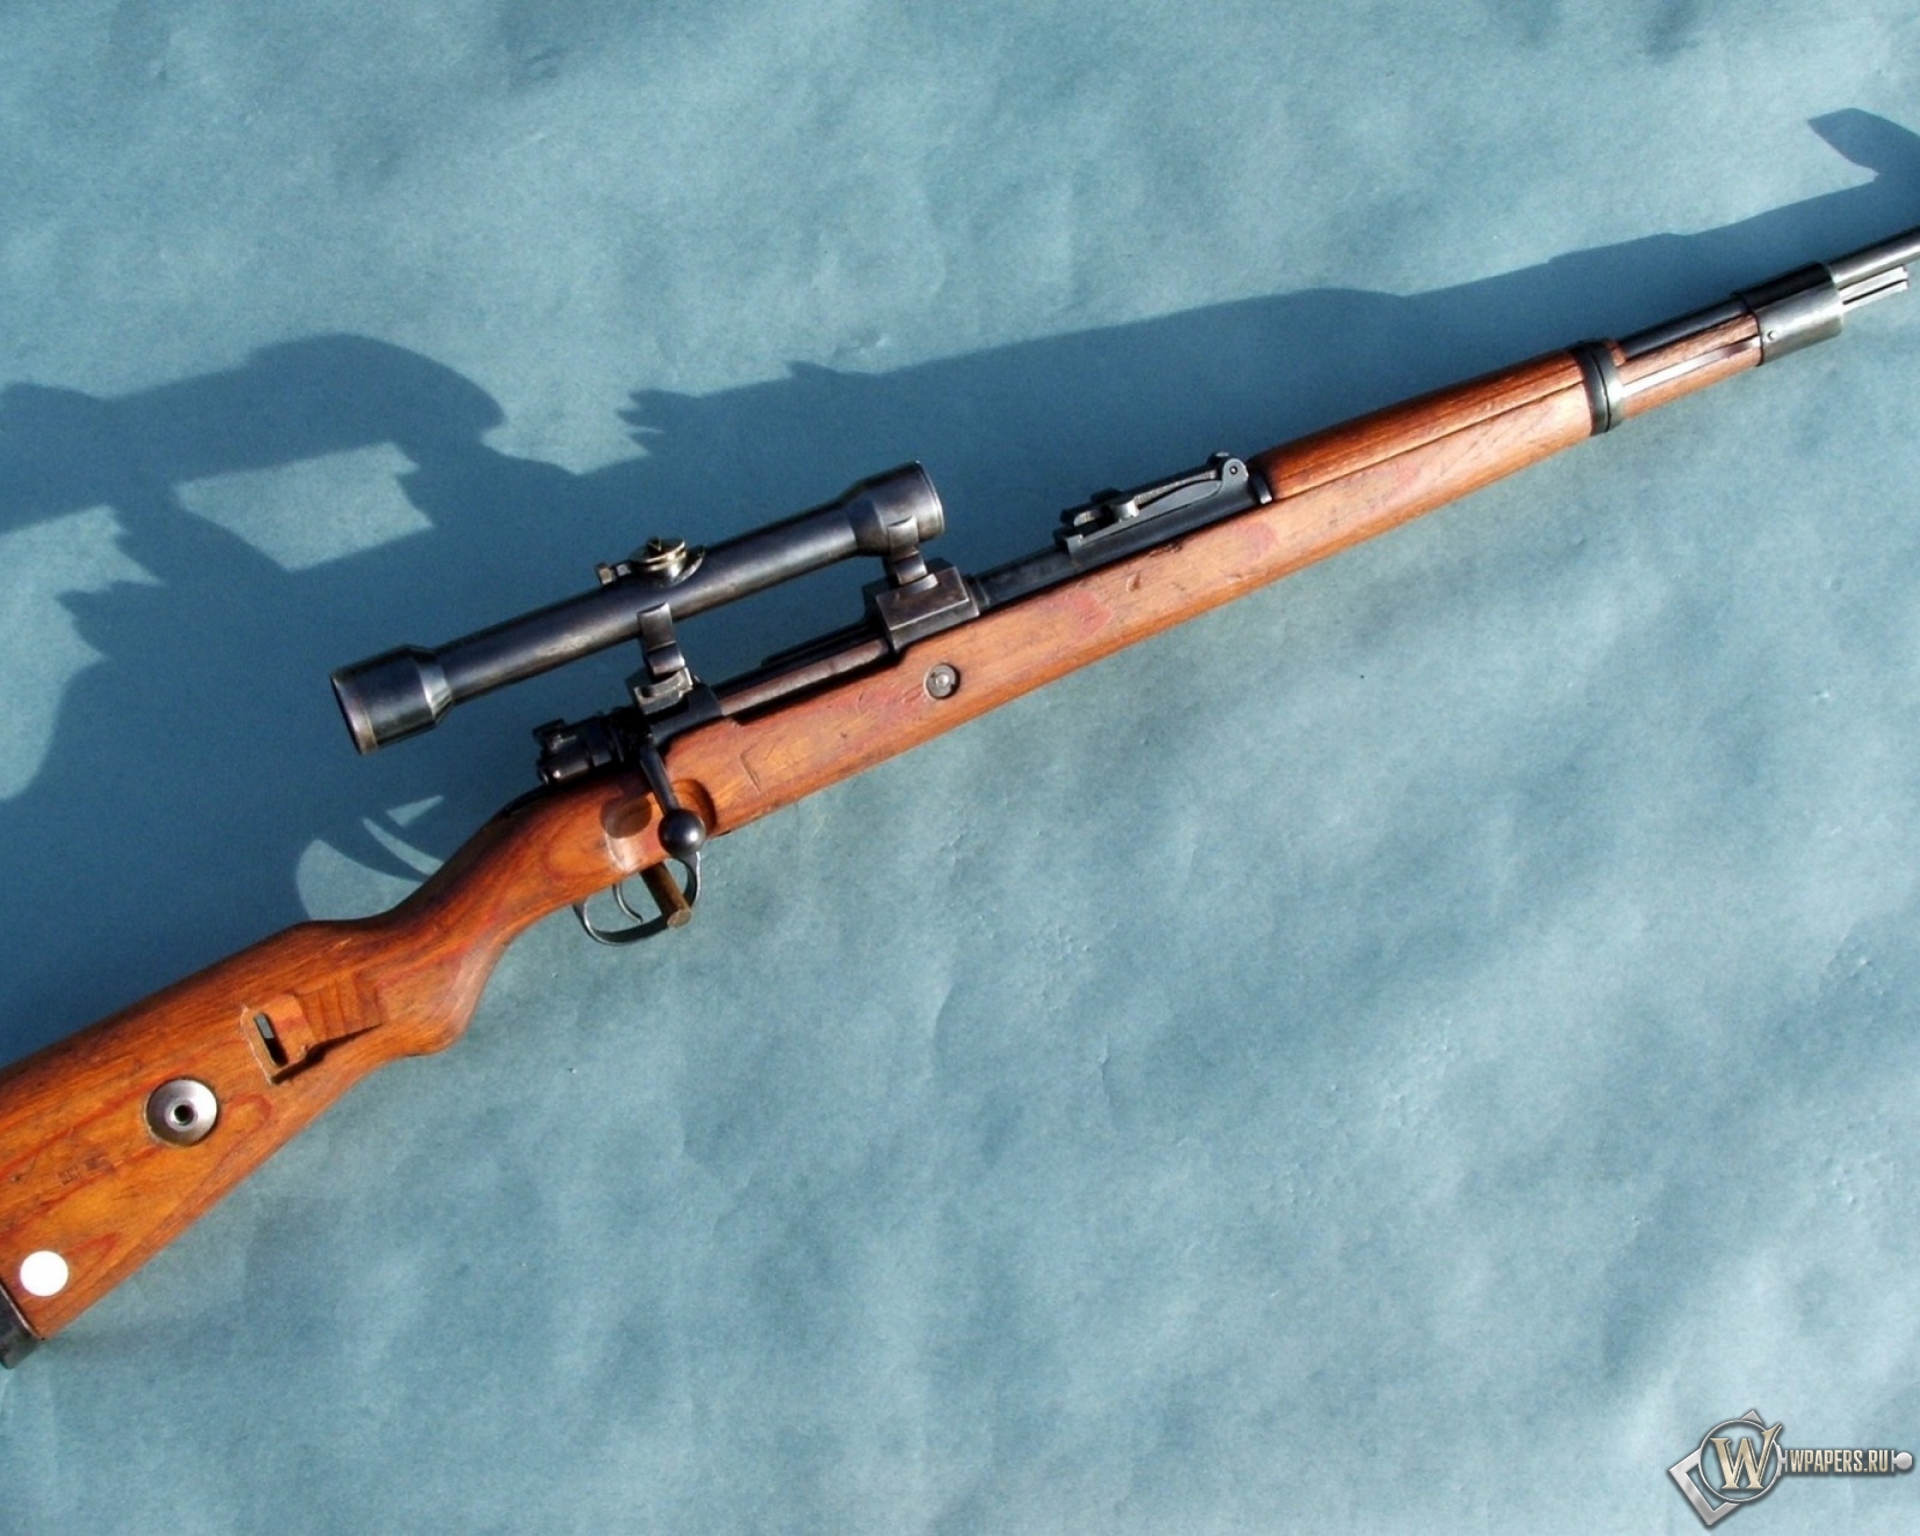 Mauser Gewehr Kar-98 1920x1536